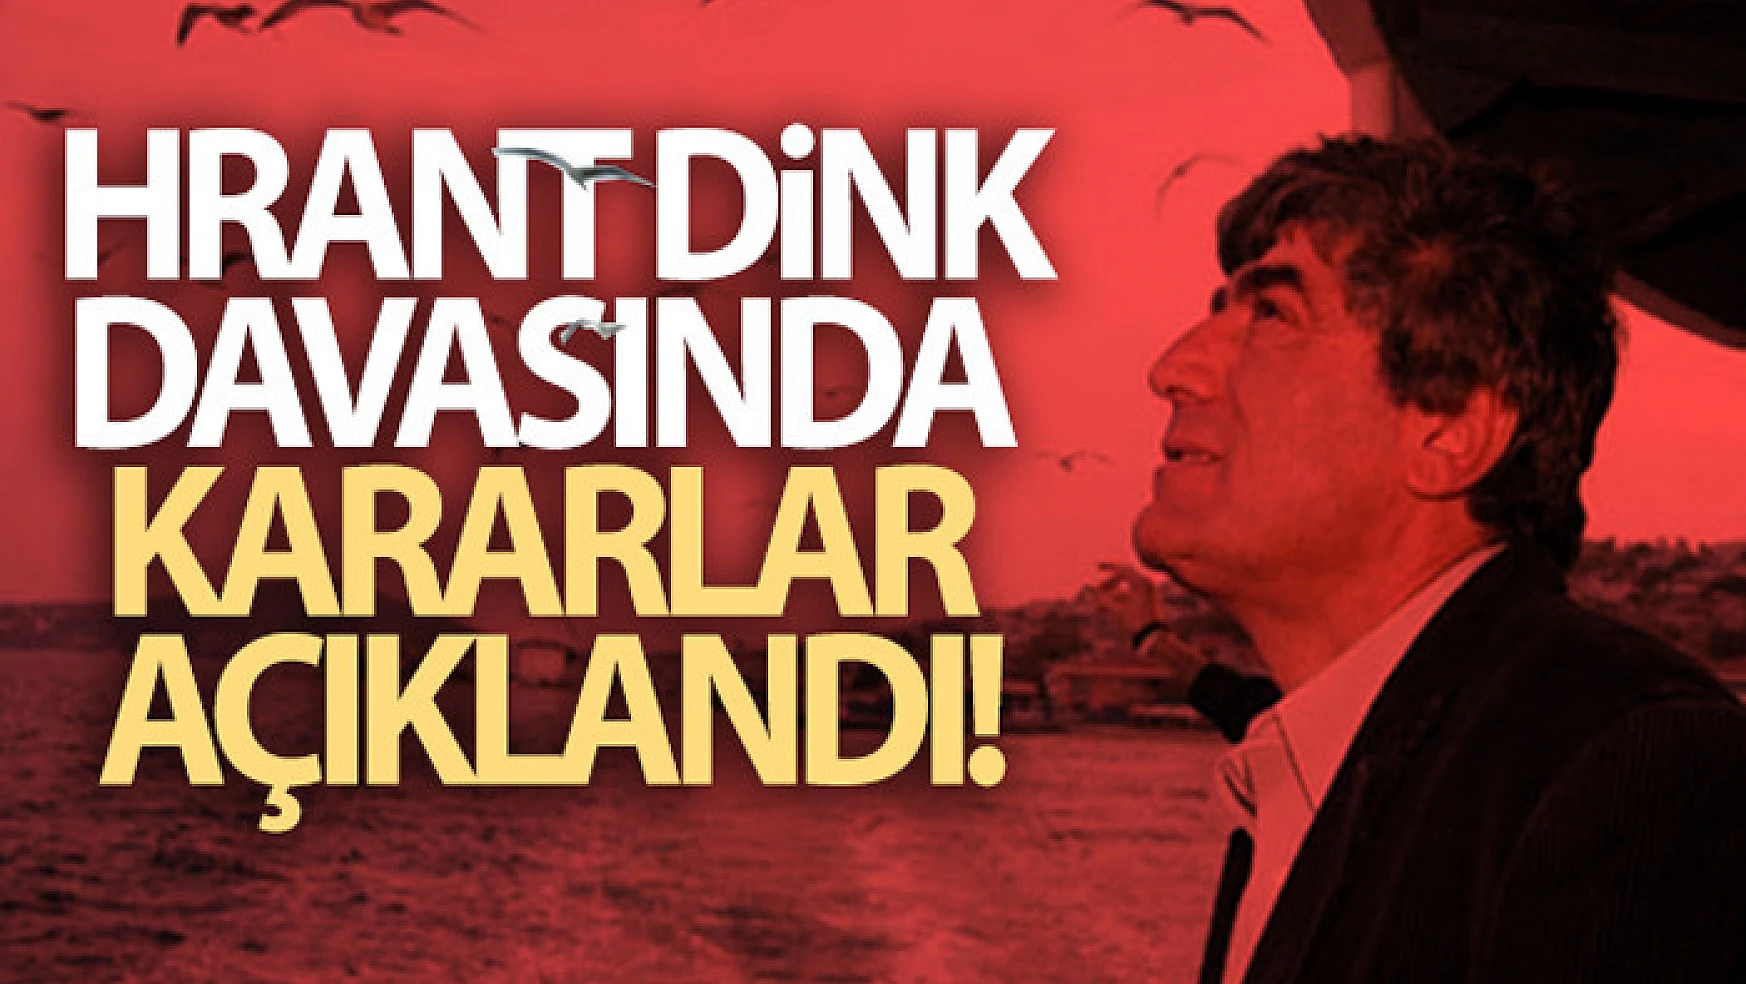 Hrant Dink davasında kararlar açıklandı!